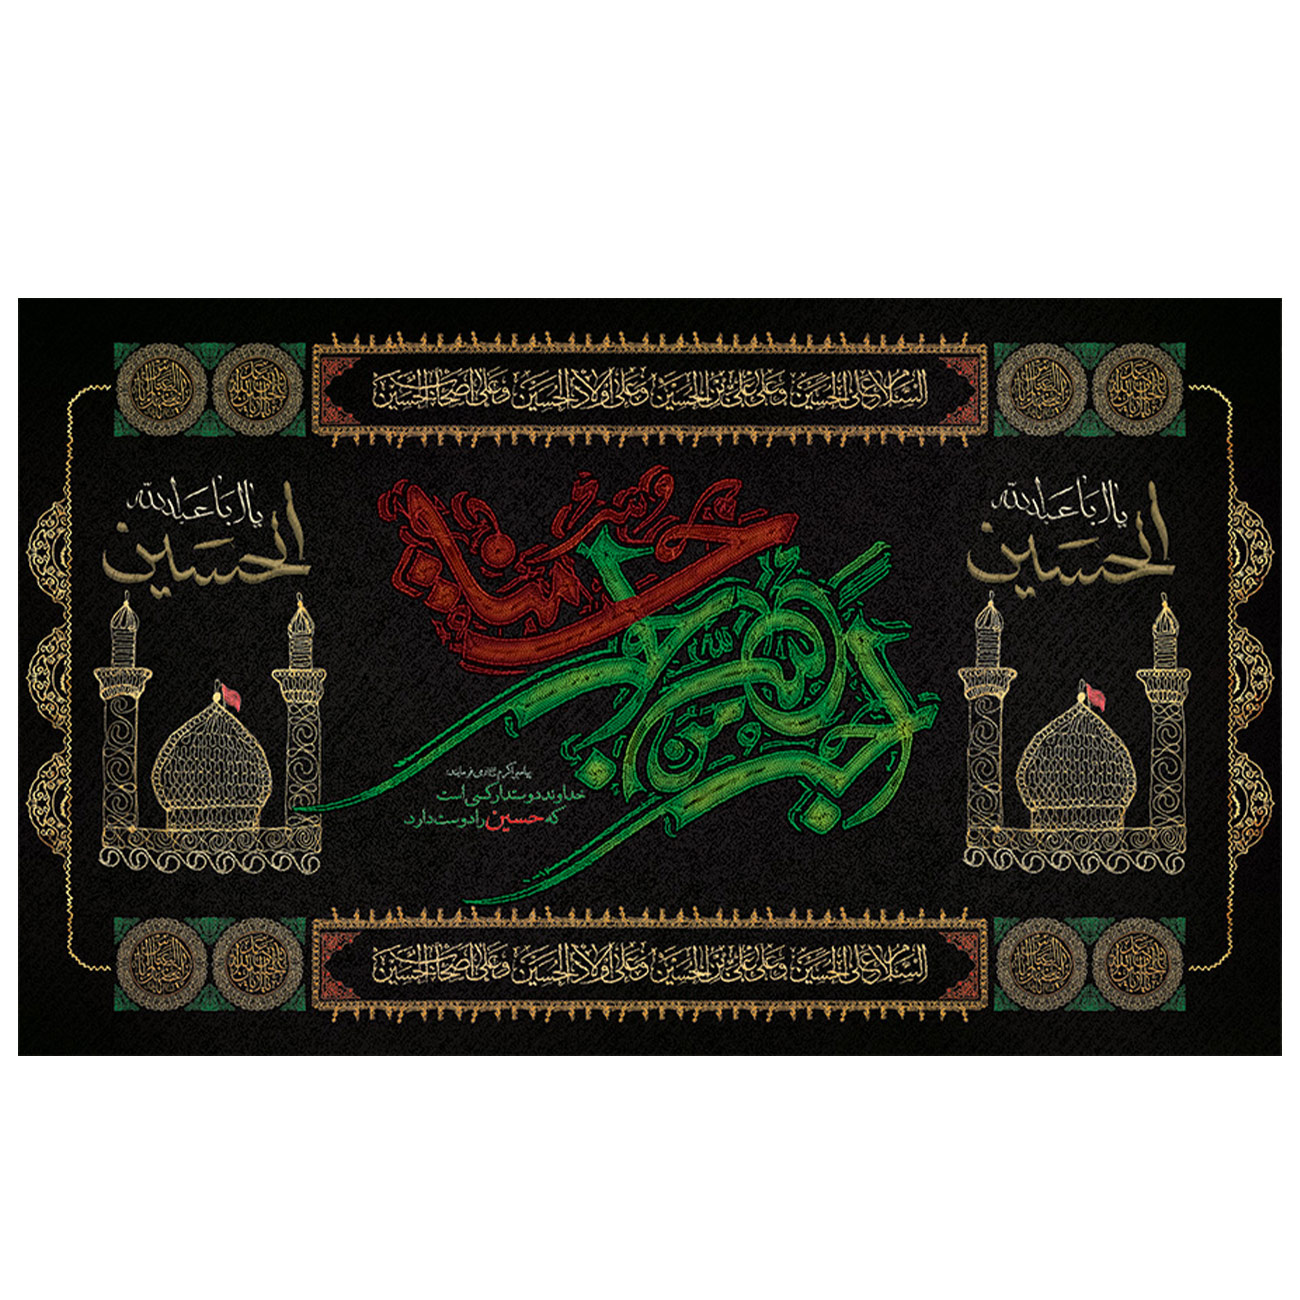  پرچم طرح مذهبی مدل امام حسین ع کد 2102H